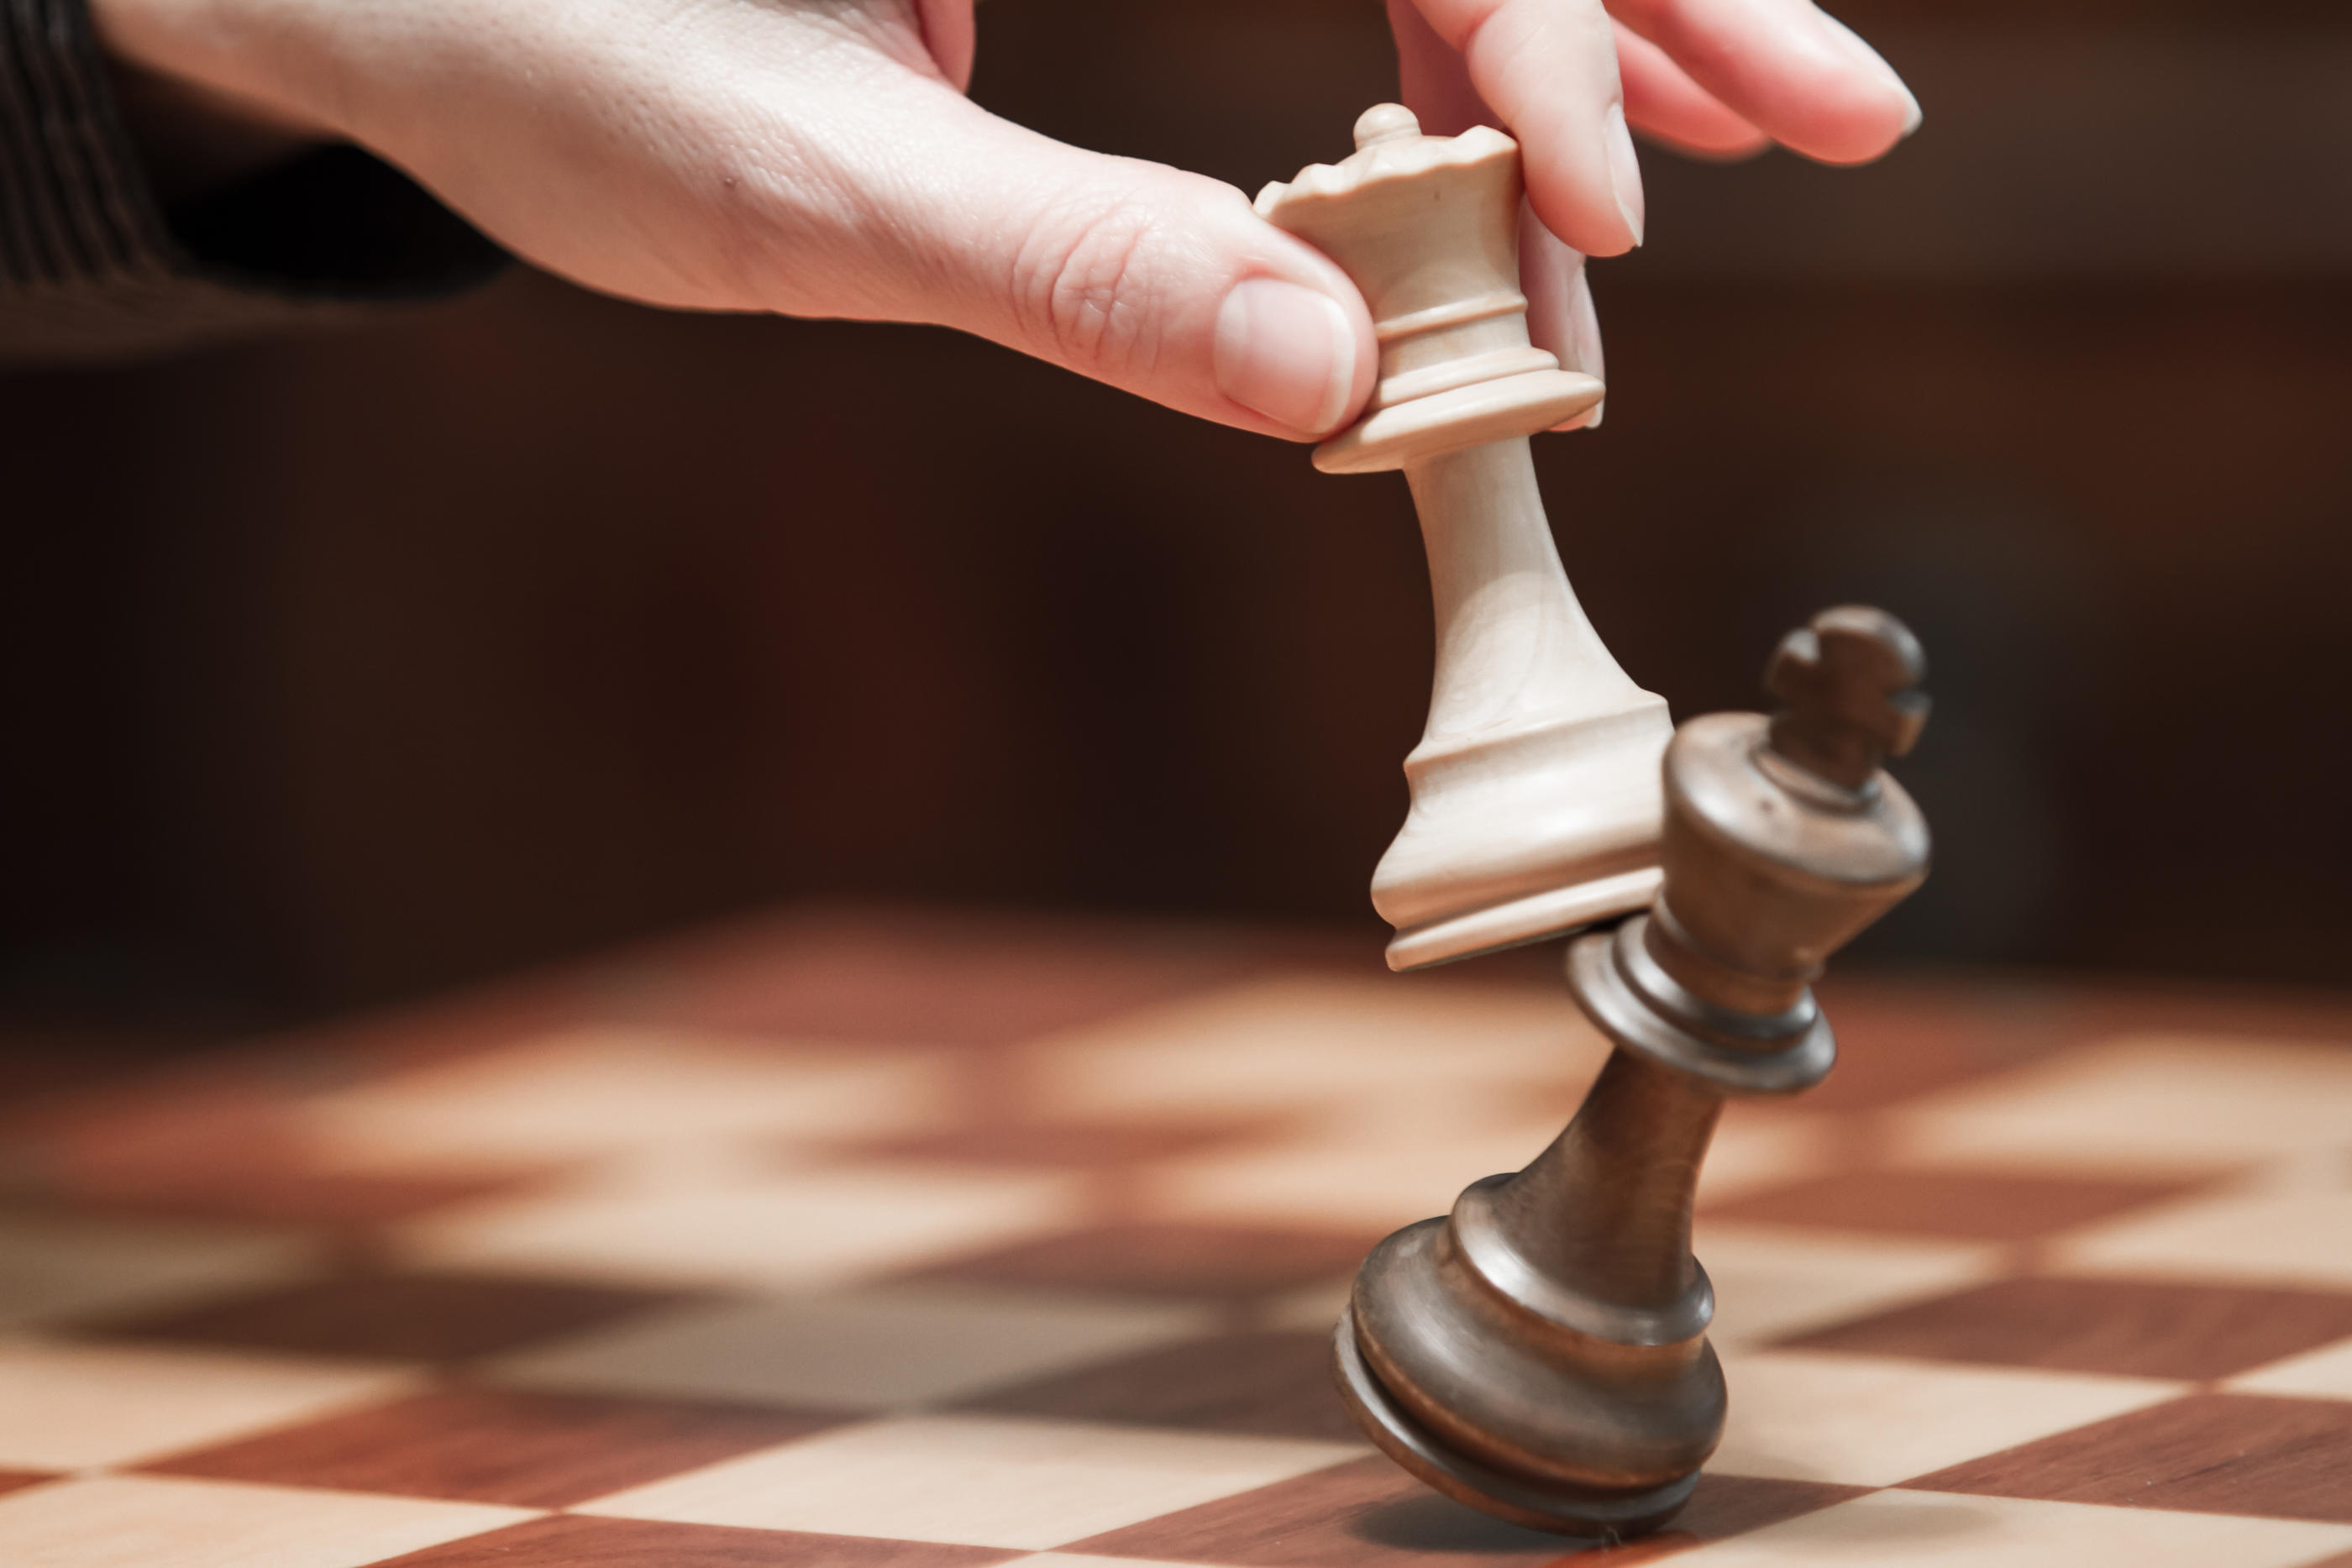 La fédération française d'échecs a présenté une batterie de mesures pour faire tomber les violences sexistes et sexuelles. Les joueuses restent vigilantes sur l'application de ce plan. iStock